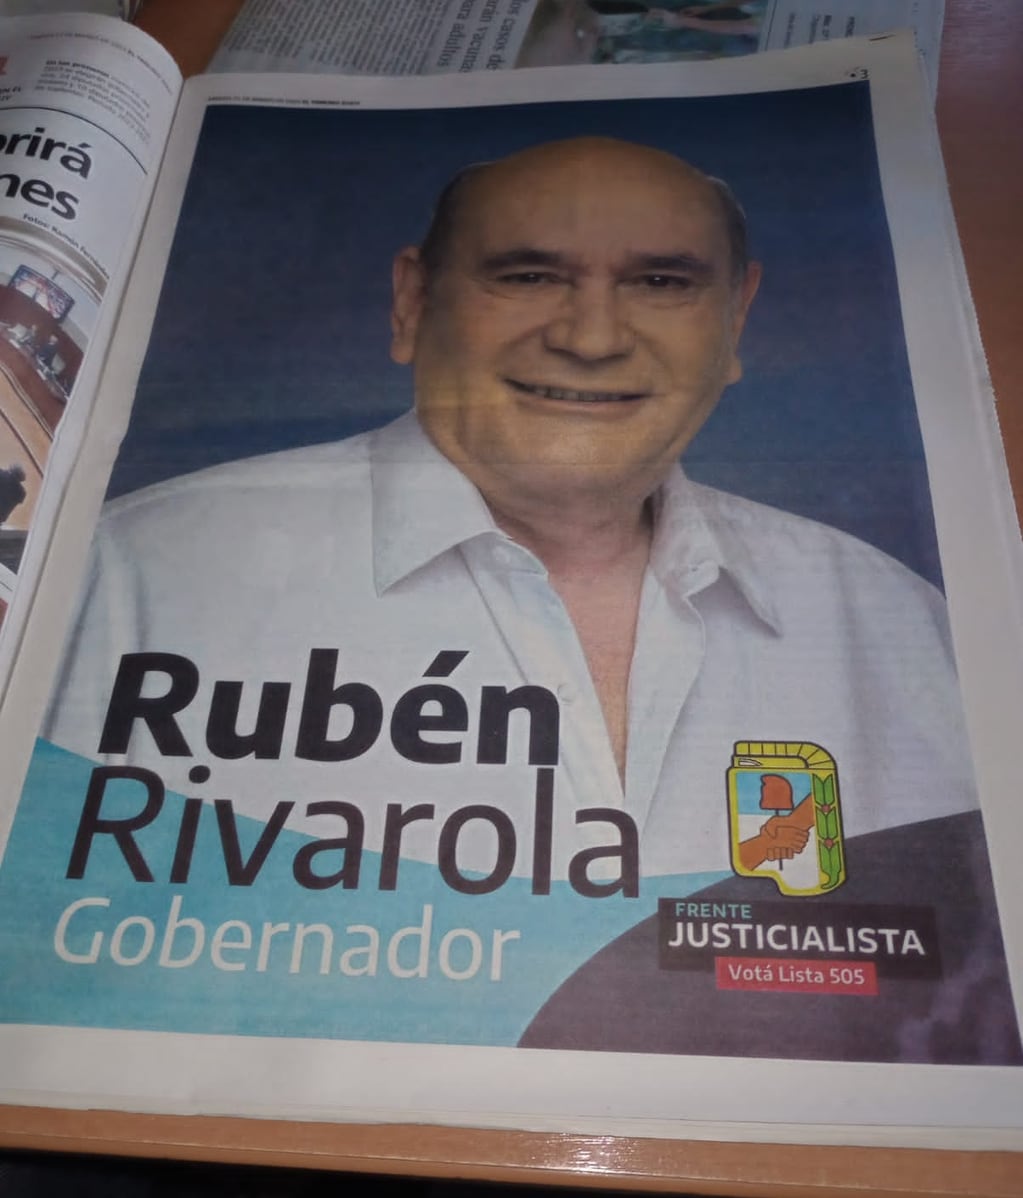 La campaña publicitaria de Rubén Rivarola como candidato a gobernador de  Jujuy, publicada en el diario de su propiedad.